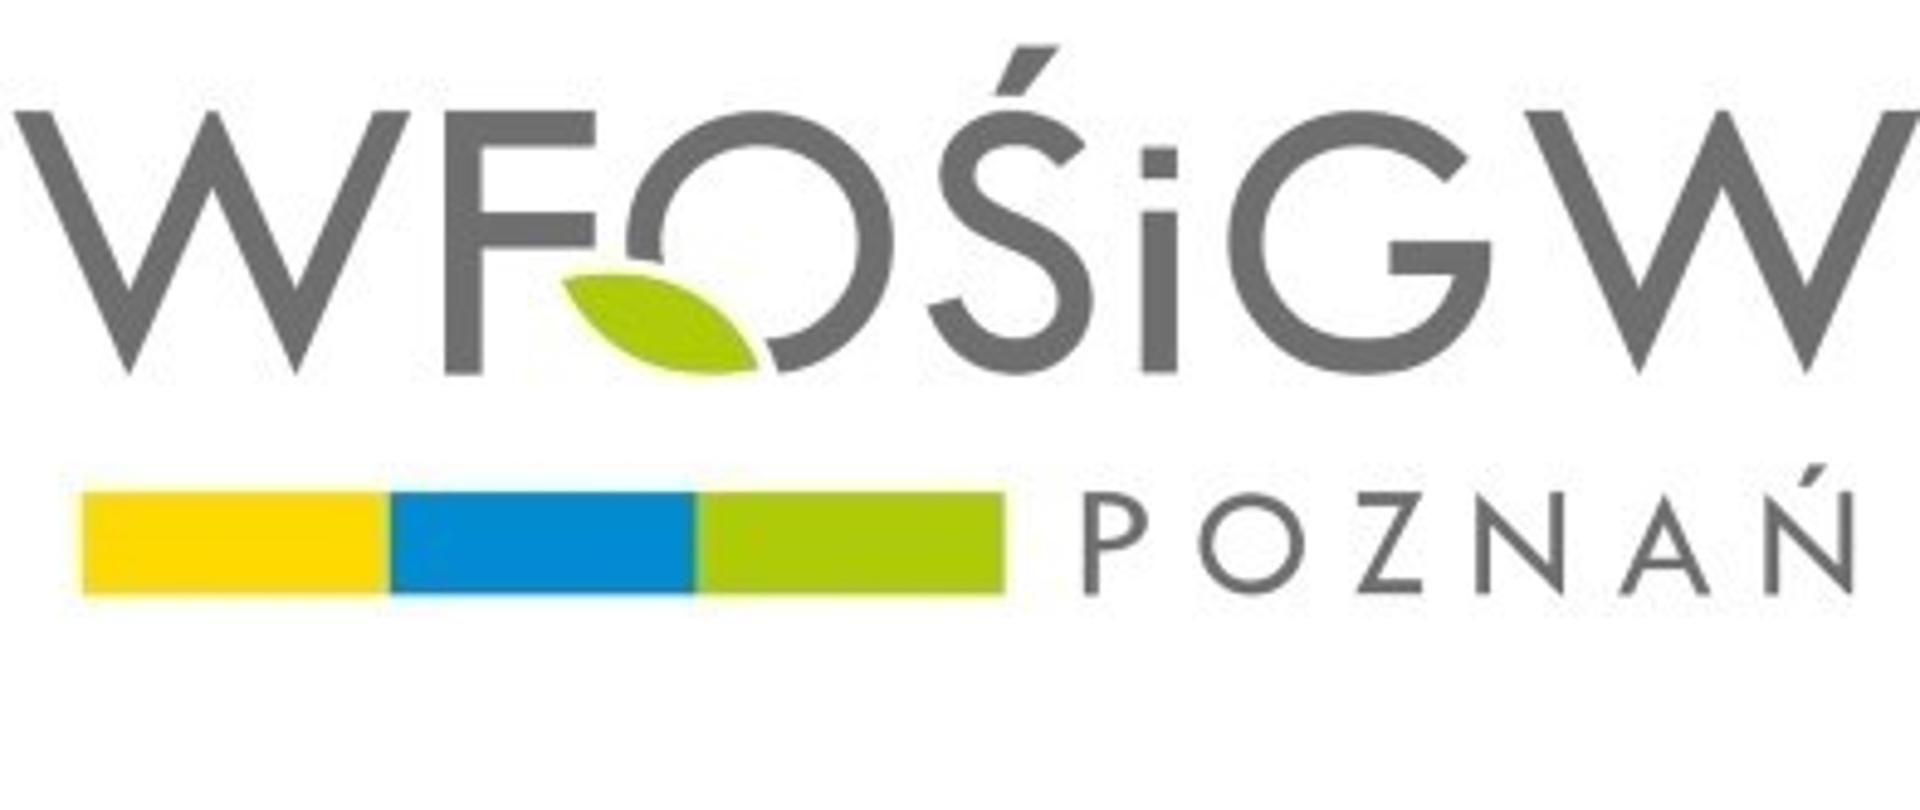 Zdjęcie przedstawia logo Wojewódzkiego Funduszu Ochrony Środowiska i Gospodarki Wodnej w Poznaniu